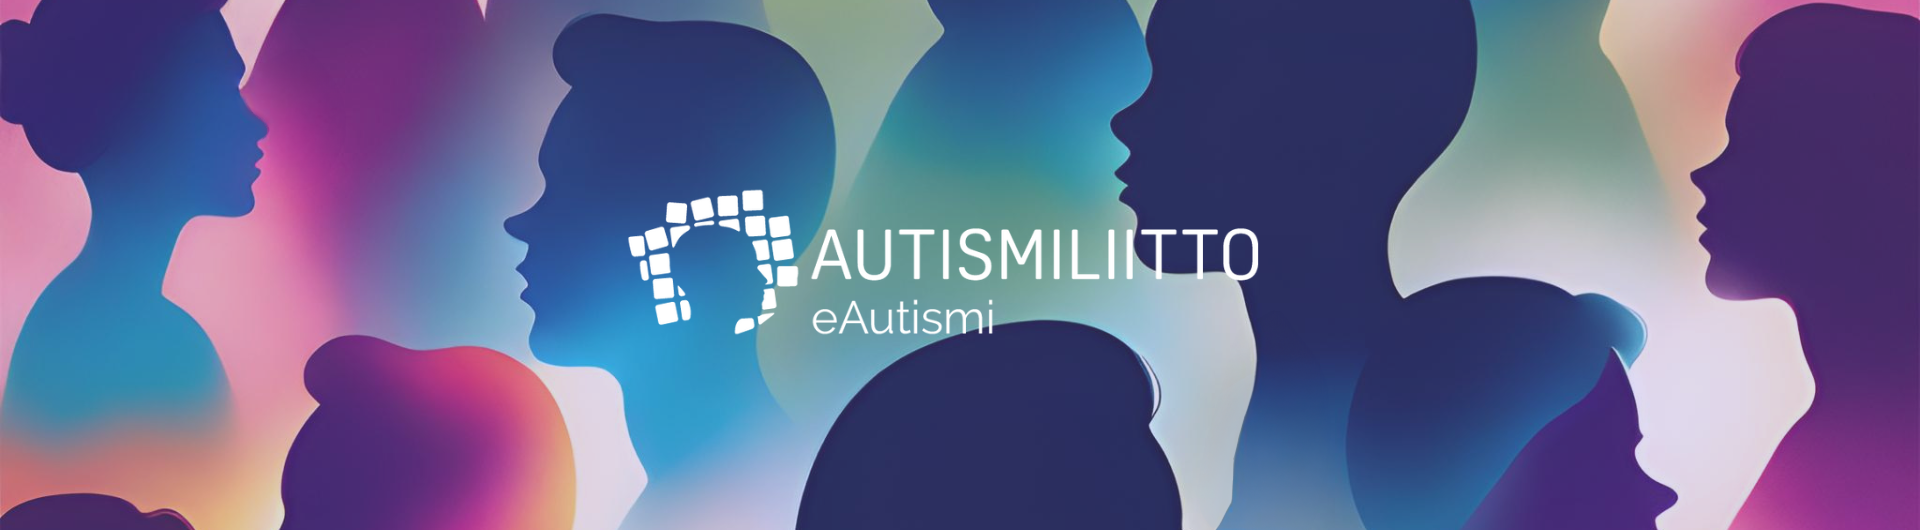 Monenvärisiä ihmiskasvojen siluetteja. Autismiliitto eAutismi -logo.